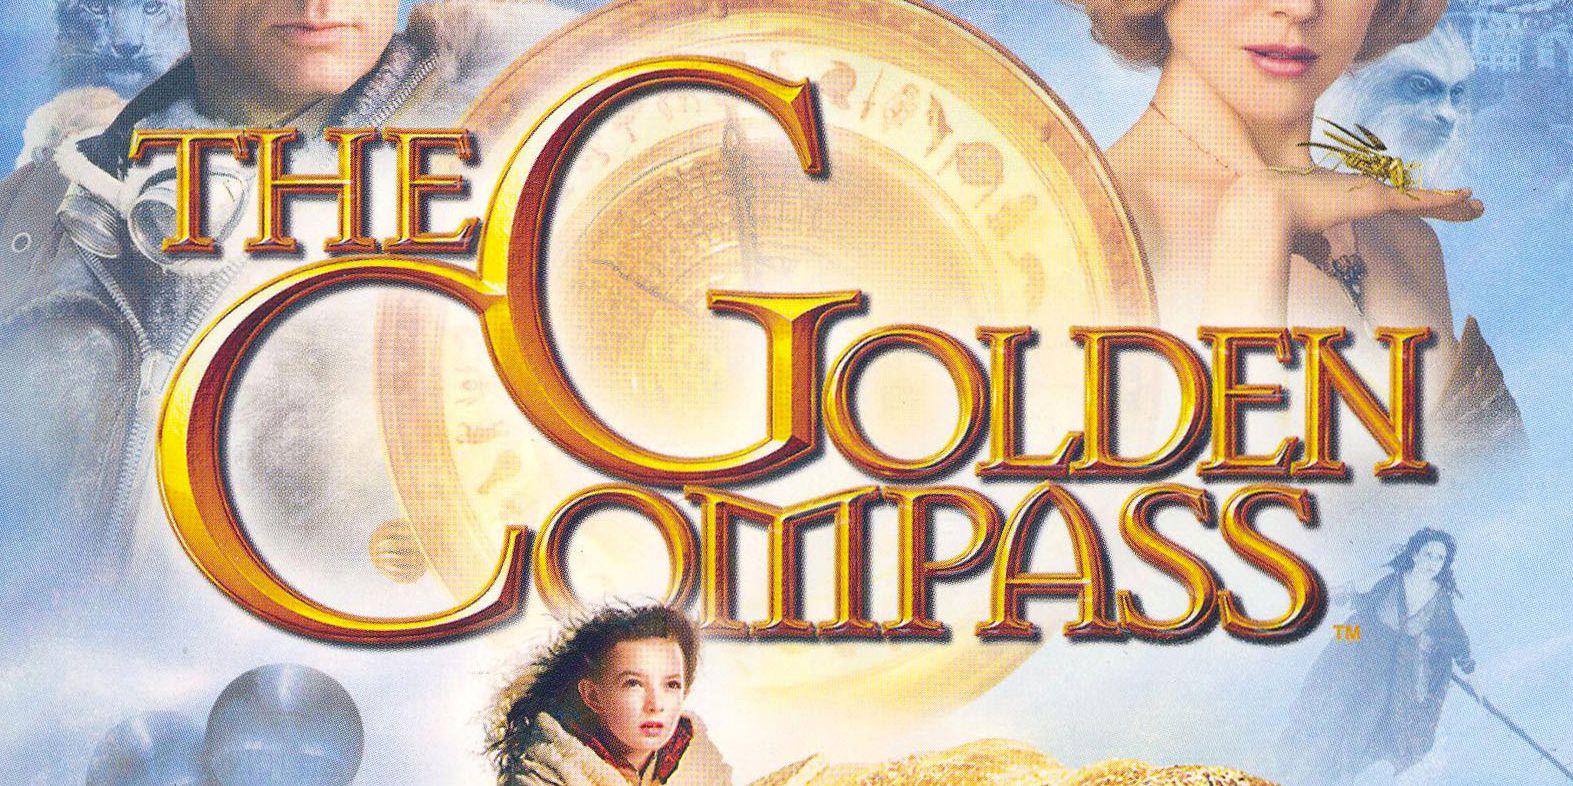 golden compass 2 movie trailer